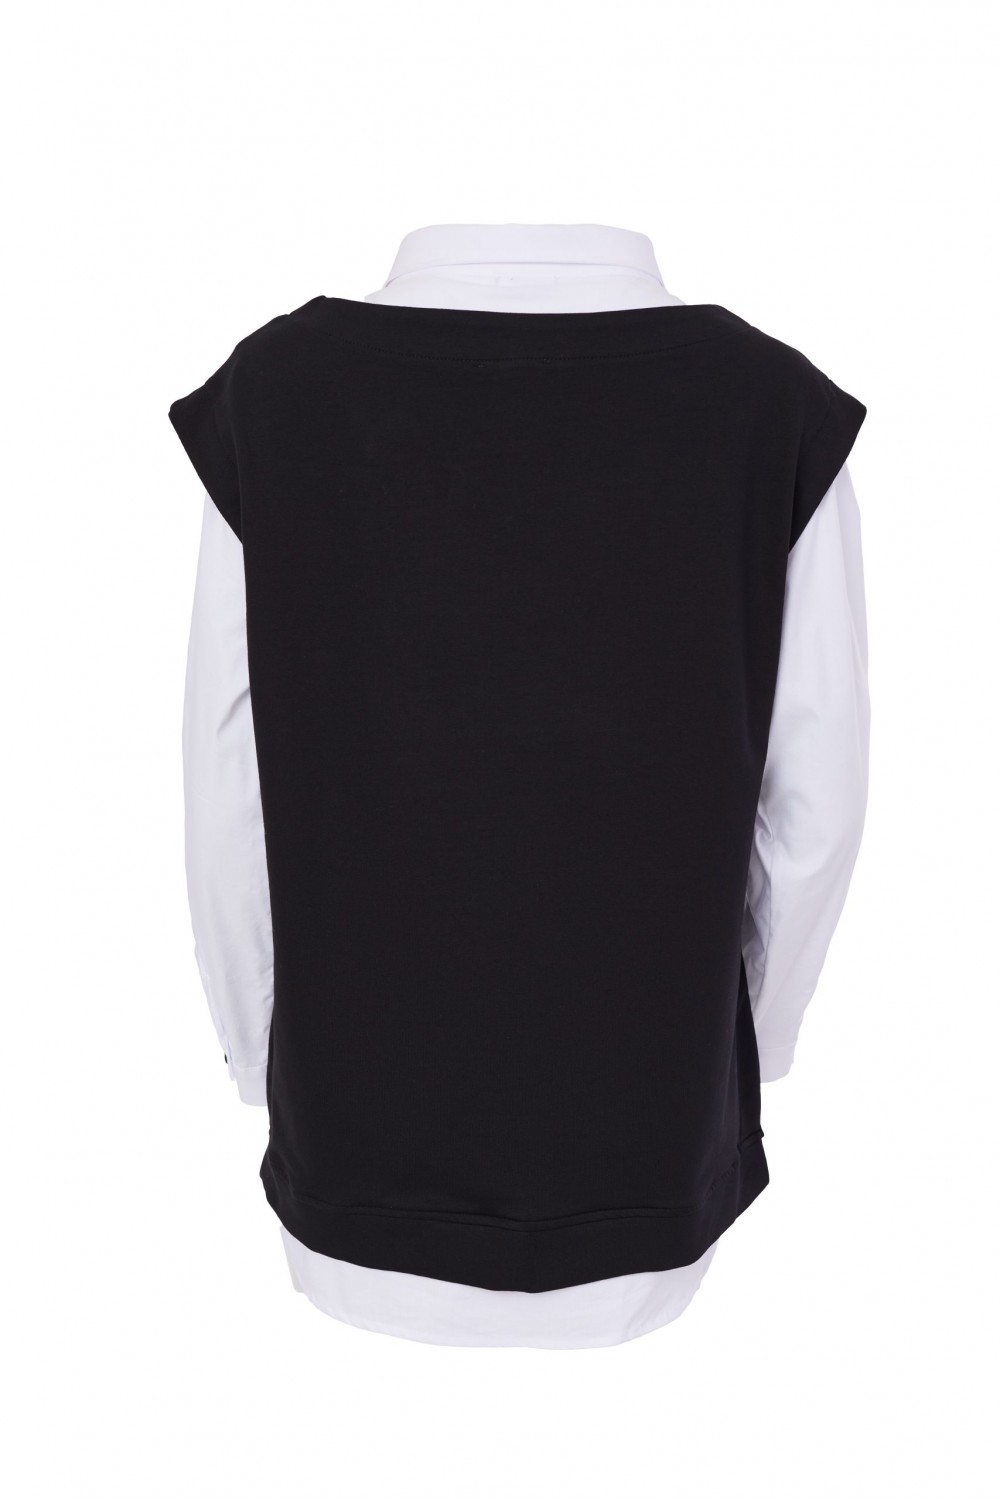 Naya Jersey Side Button Vest & Shirt Combo Black/White